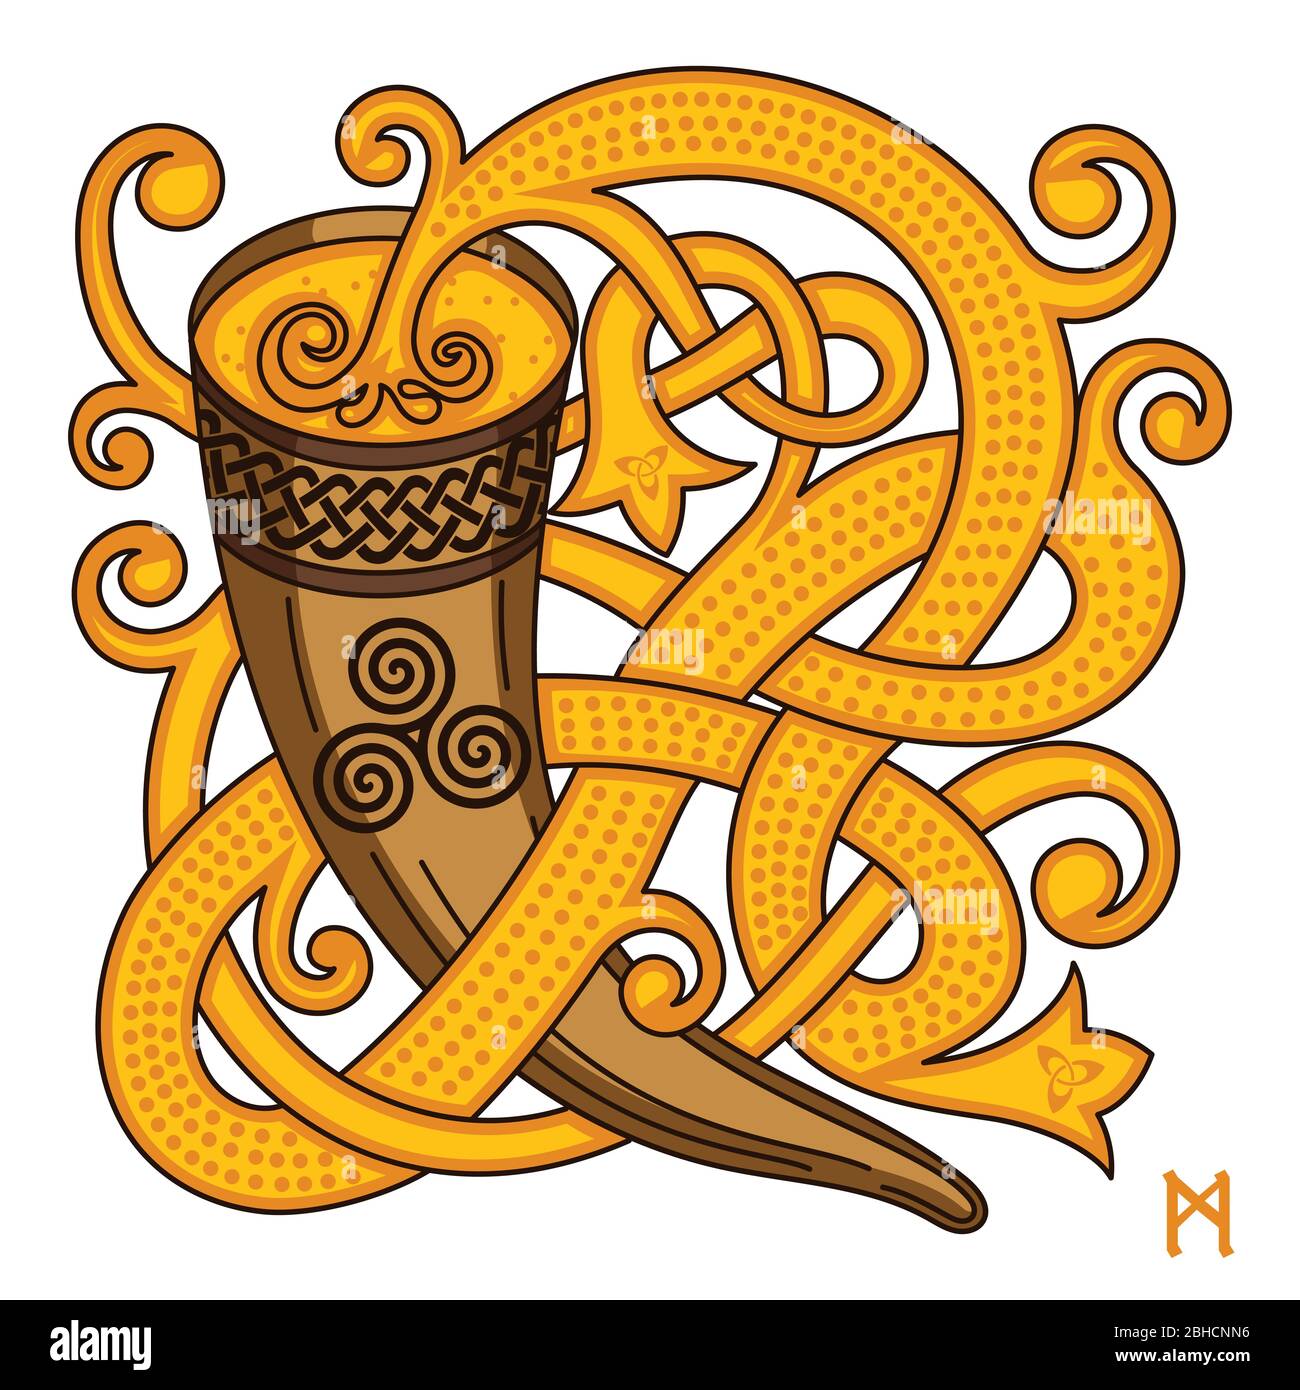 Keltisches, skandinavisches Design. Trinkhorn mit Met und gewebtem Muster Stock Vektor